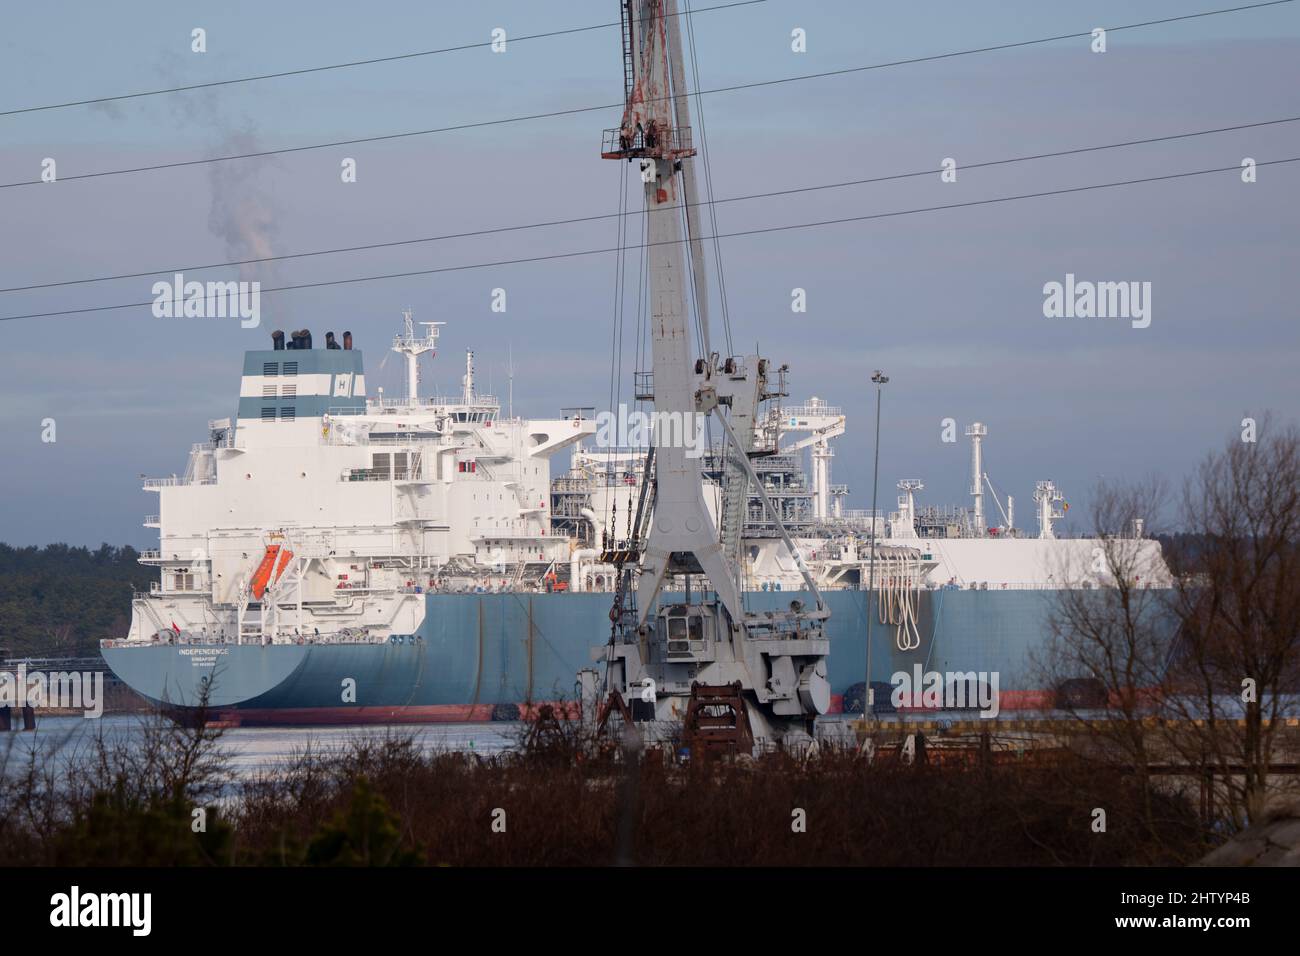 Klaipeda, Lituania. 03rd Mar 2022. L'invasione dell'Ucraina da parte della Russia ha suscitato preoccupazioni per la possibilità di ridurre le forniture di gas russo all'Europa. La nave "Indipendenza", consegnata nel marzo 2014, è un'unità di stoccaggio e rigassificazione del GNL (FSRU) utilizzata come terminale di importazione del GNL a Klaipeda Lituania. La nave può immagazzinare 170.000 m3 (6.000.000 piedi cubi) di gas naturale e può fornire tutto il fabbisogno di gas naturale della Lituania. Essa prevede una certa diversificazione delle importazioni lituane di gas al di fuori della Russia. Foto: Garyroberts/worldwidefeatures.com Credit: GaryRobertsphotography/Alamy Live News Foto Stock